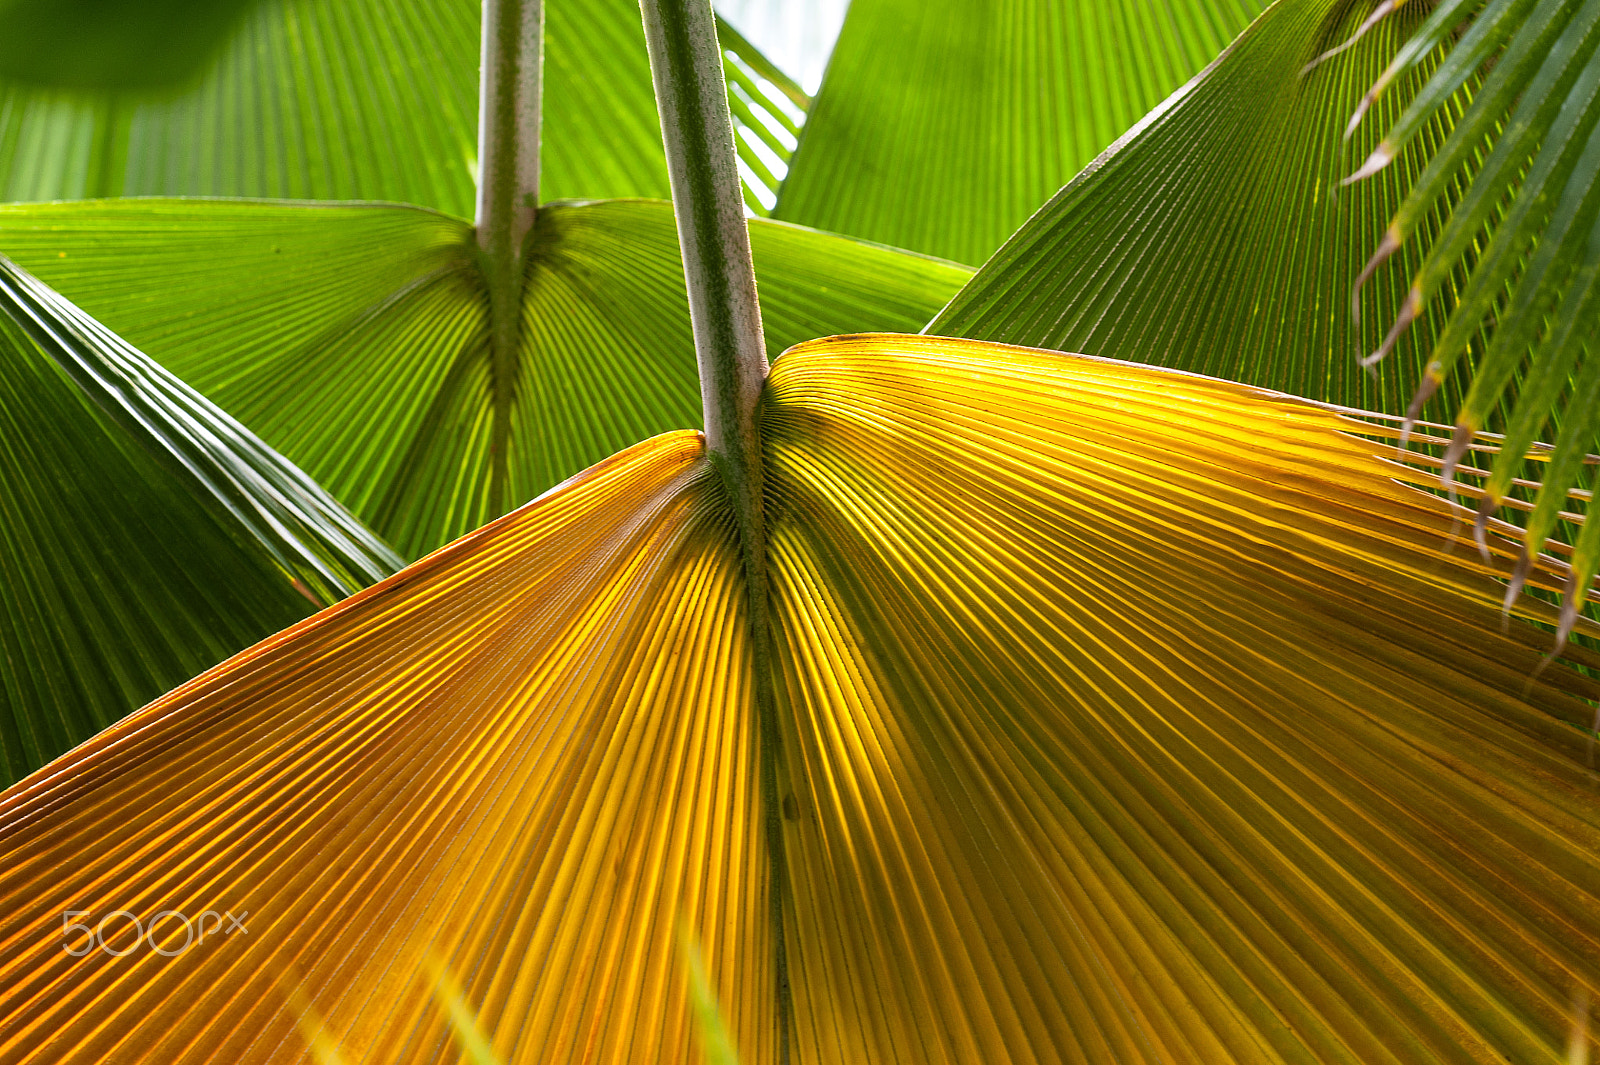 Nikon D700 + Nikon AF-S Nikkor 70-200mm F4G ED VR sample photo. Colorful palm tree leaves photography